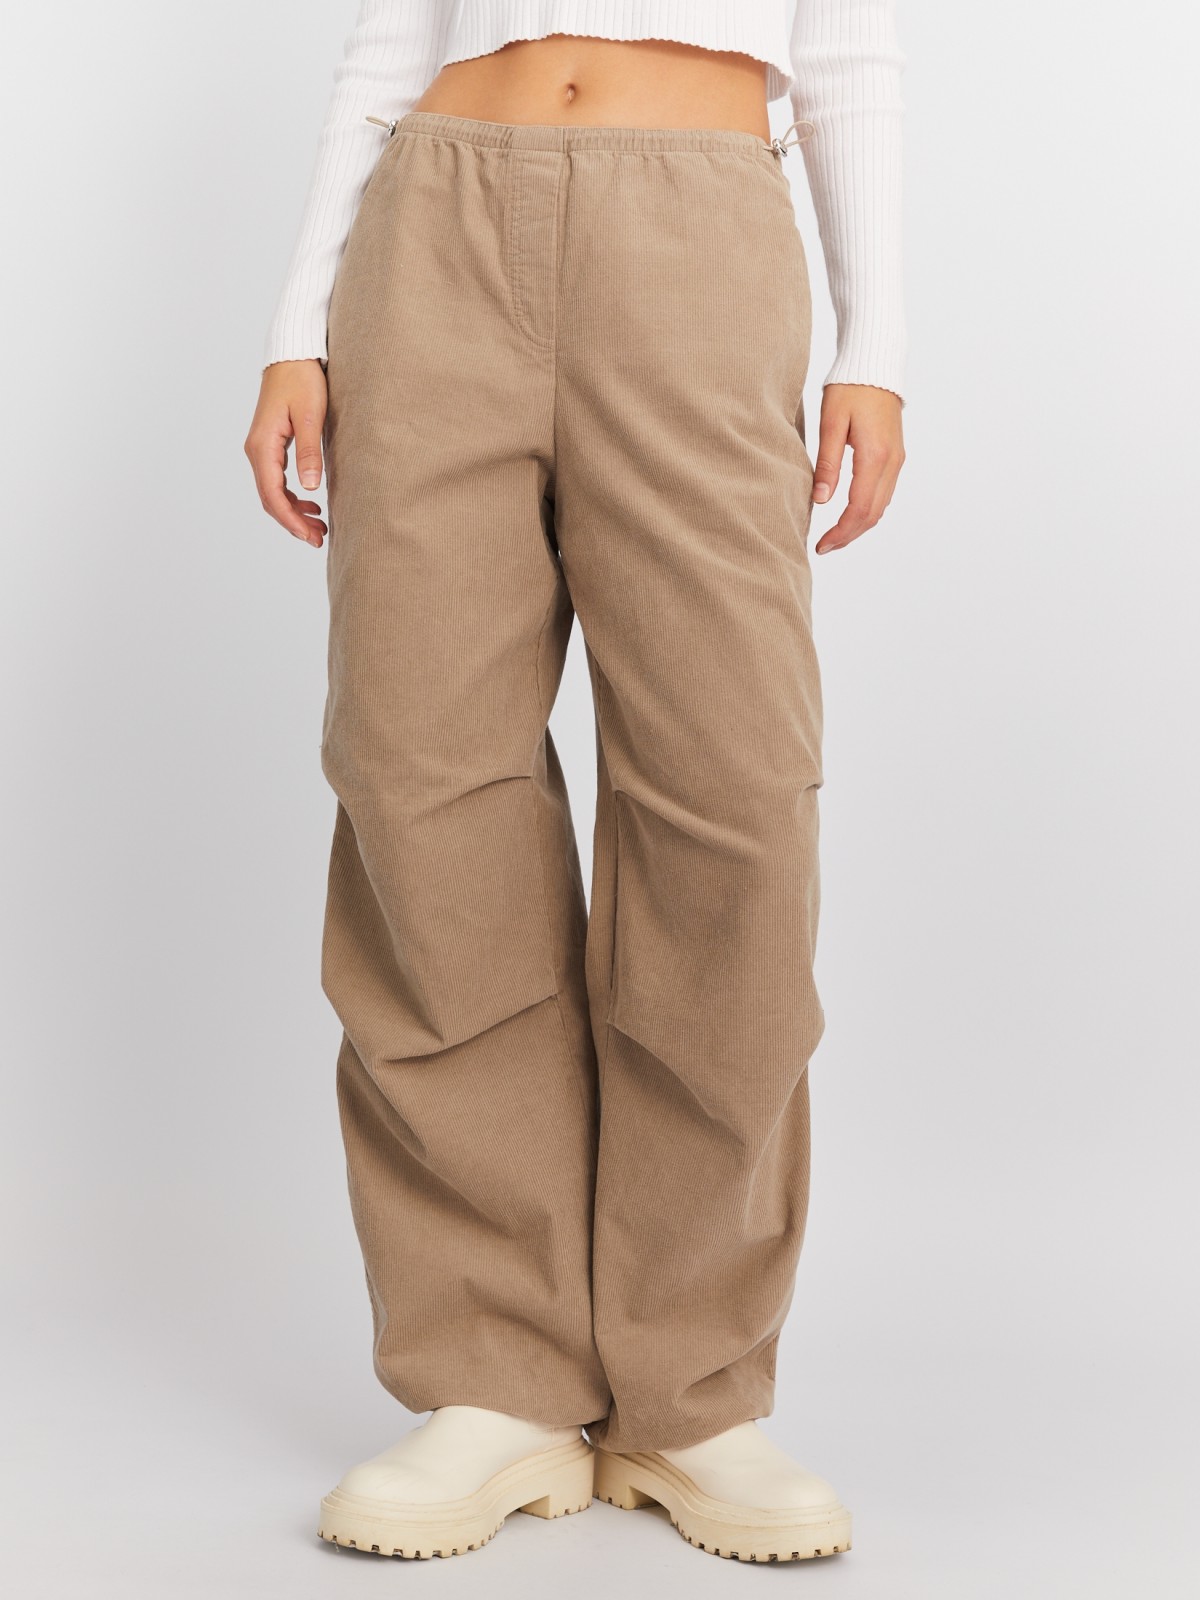 Вельветовые брюки-джоггеры на кулиске из хлопка zolla 024117359011, цвет бежевый, размер XS - фото 2